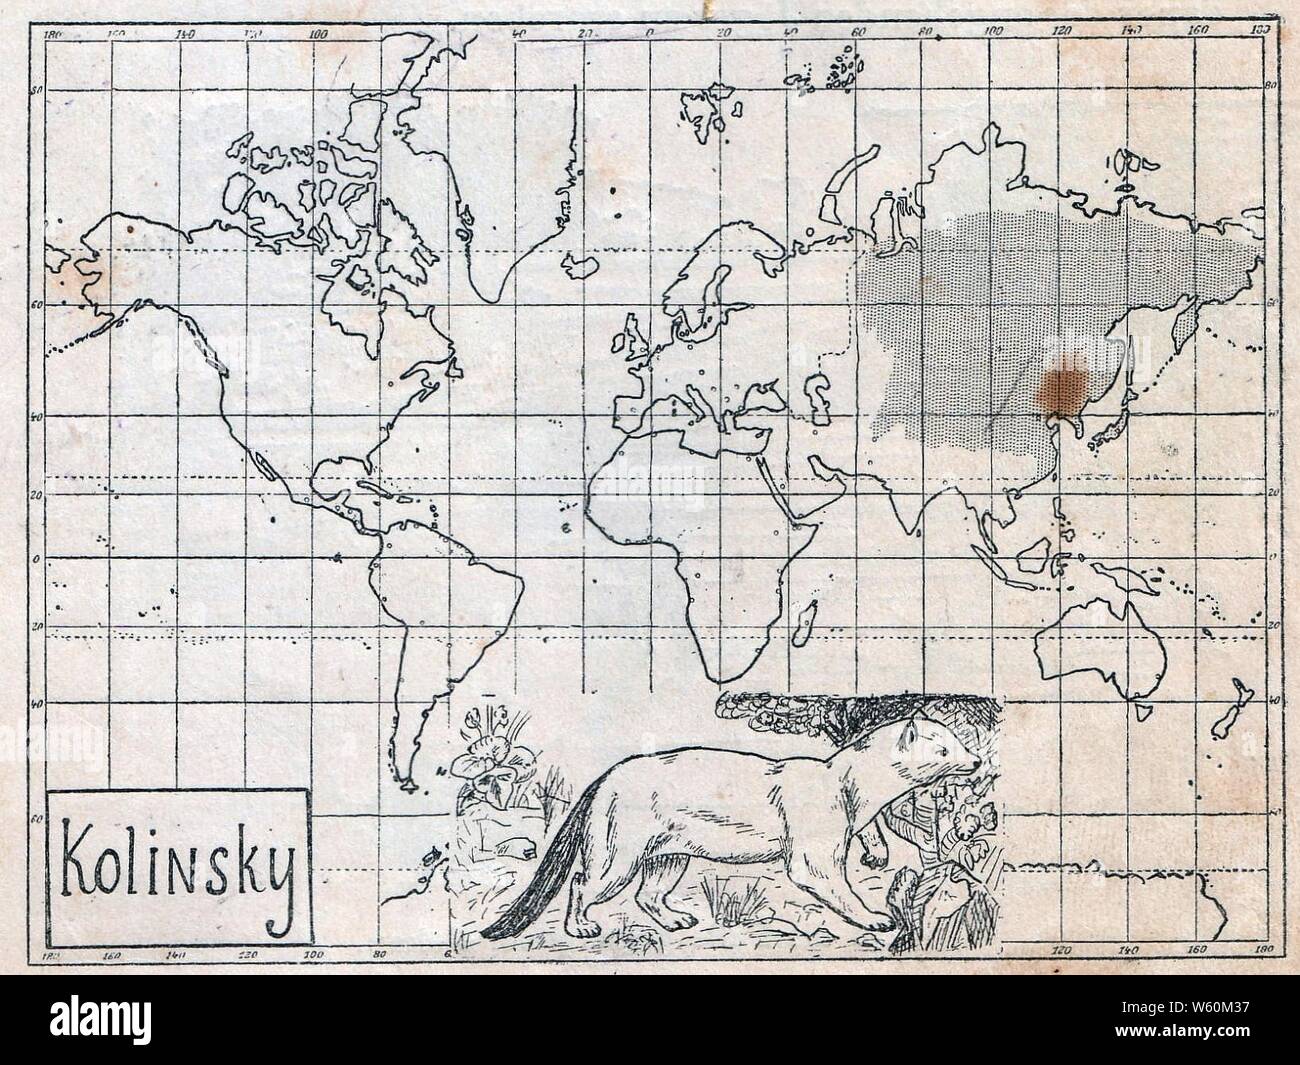 Das Kürschner-Handwerk, 3. Teil, S. 27, Weltkarte Verbreitung des Kolinskys. Stock Photo